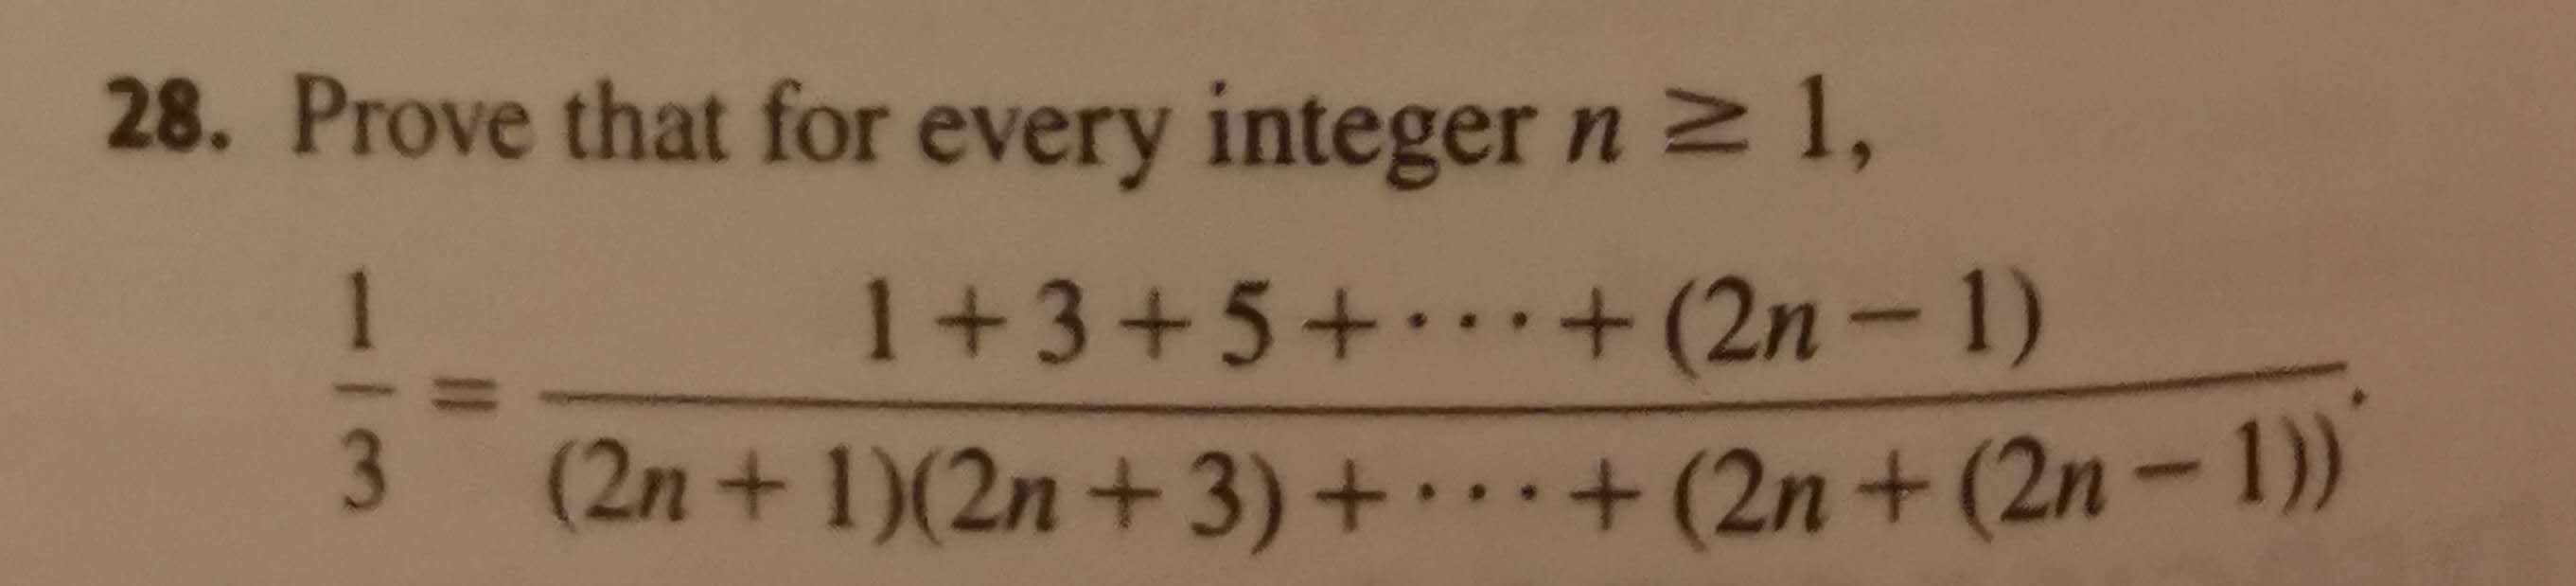 28. Prove that for every integer n 2 1,
1
1+3+5+.·+ (2n-1)
3
(2n+1)(2n+3)++(2n+(2n-1))
1.
